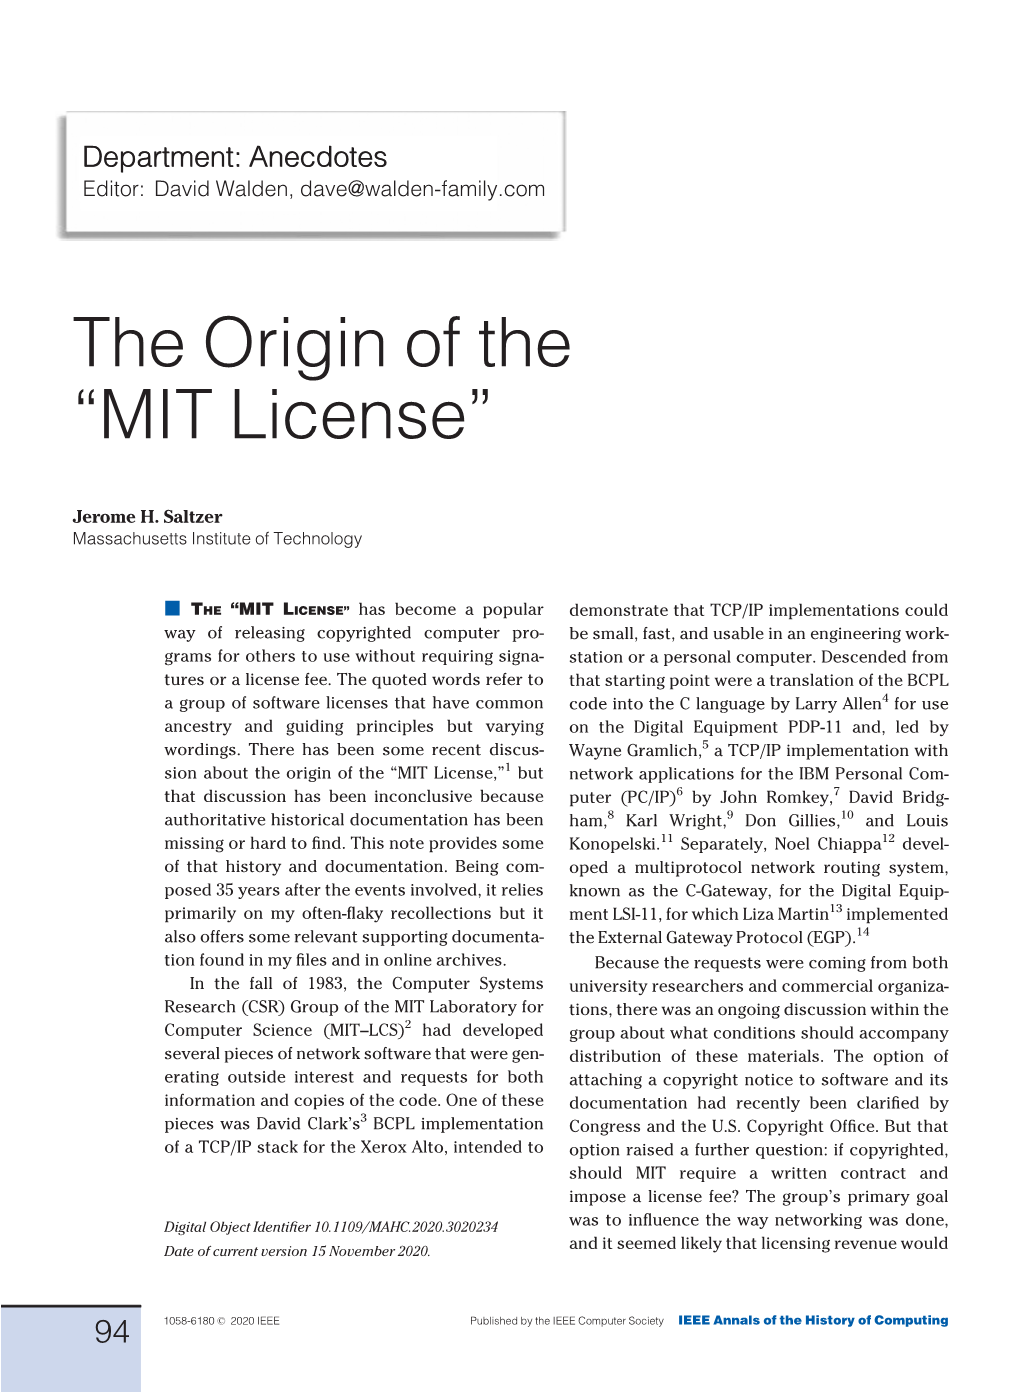 The Origin of the &#X201c;MIT License&#X201d;